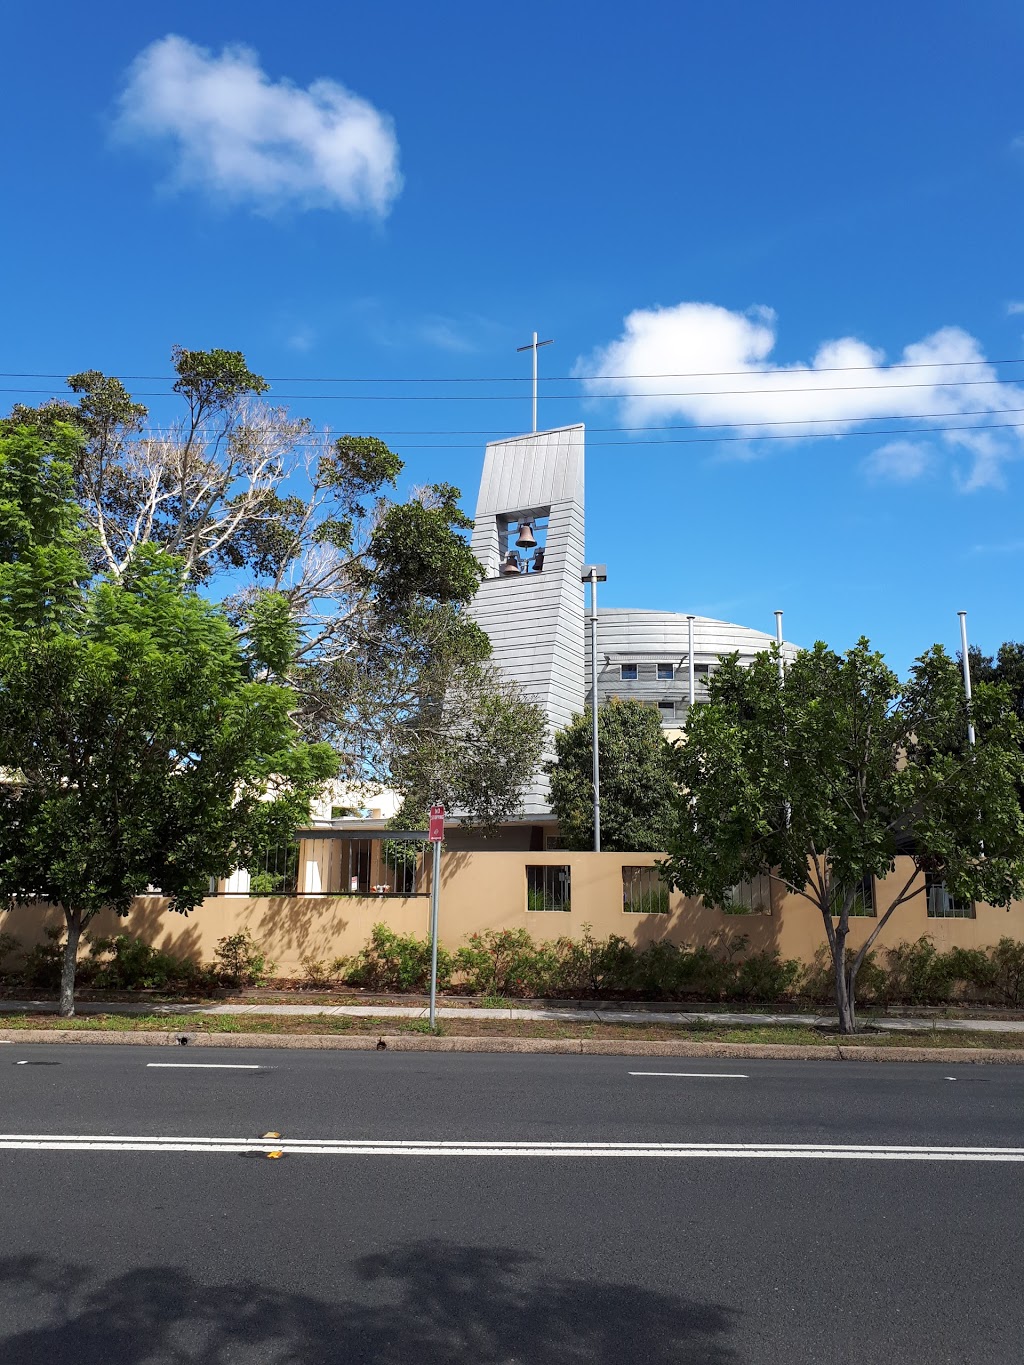 St John the Baptist Church | church | 125 Blackwall Rd, Woy Woy NSW 2256, Australia | 0243411073 OR +61 2 4341 1073